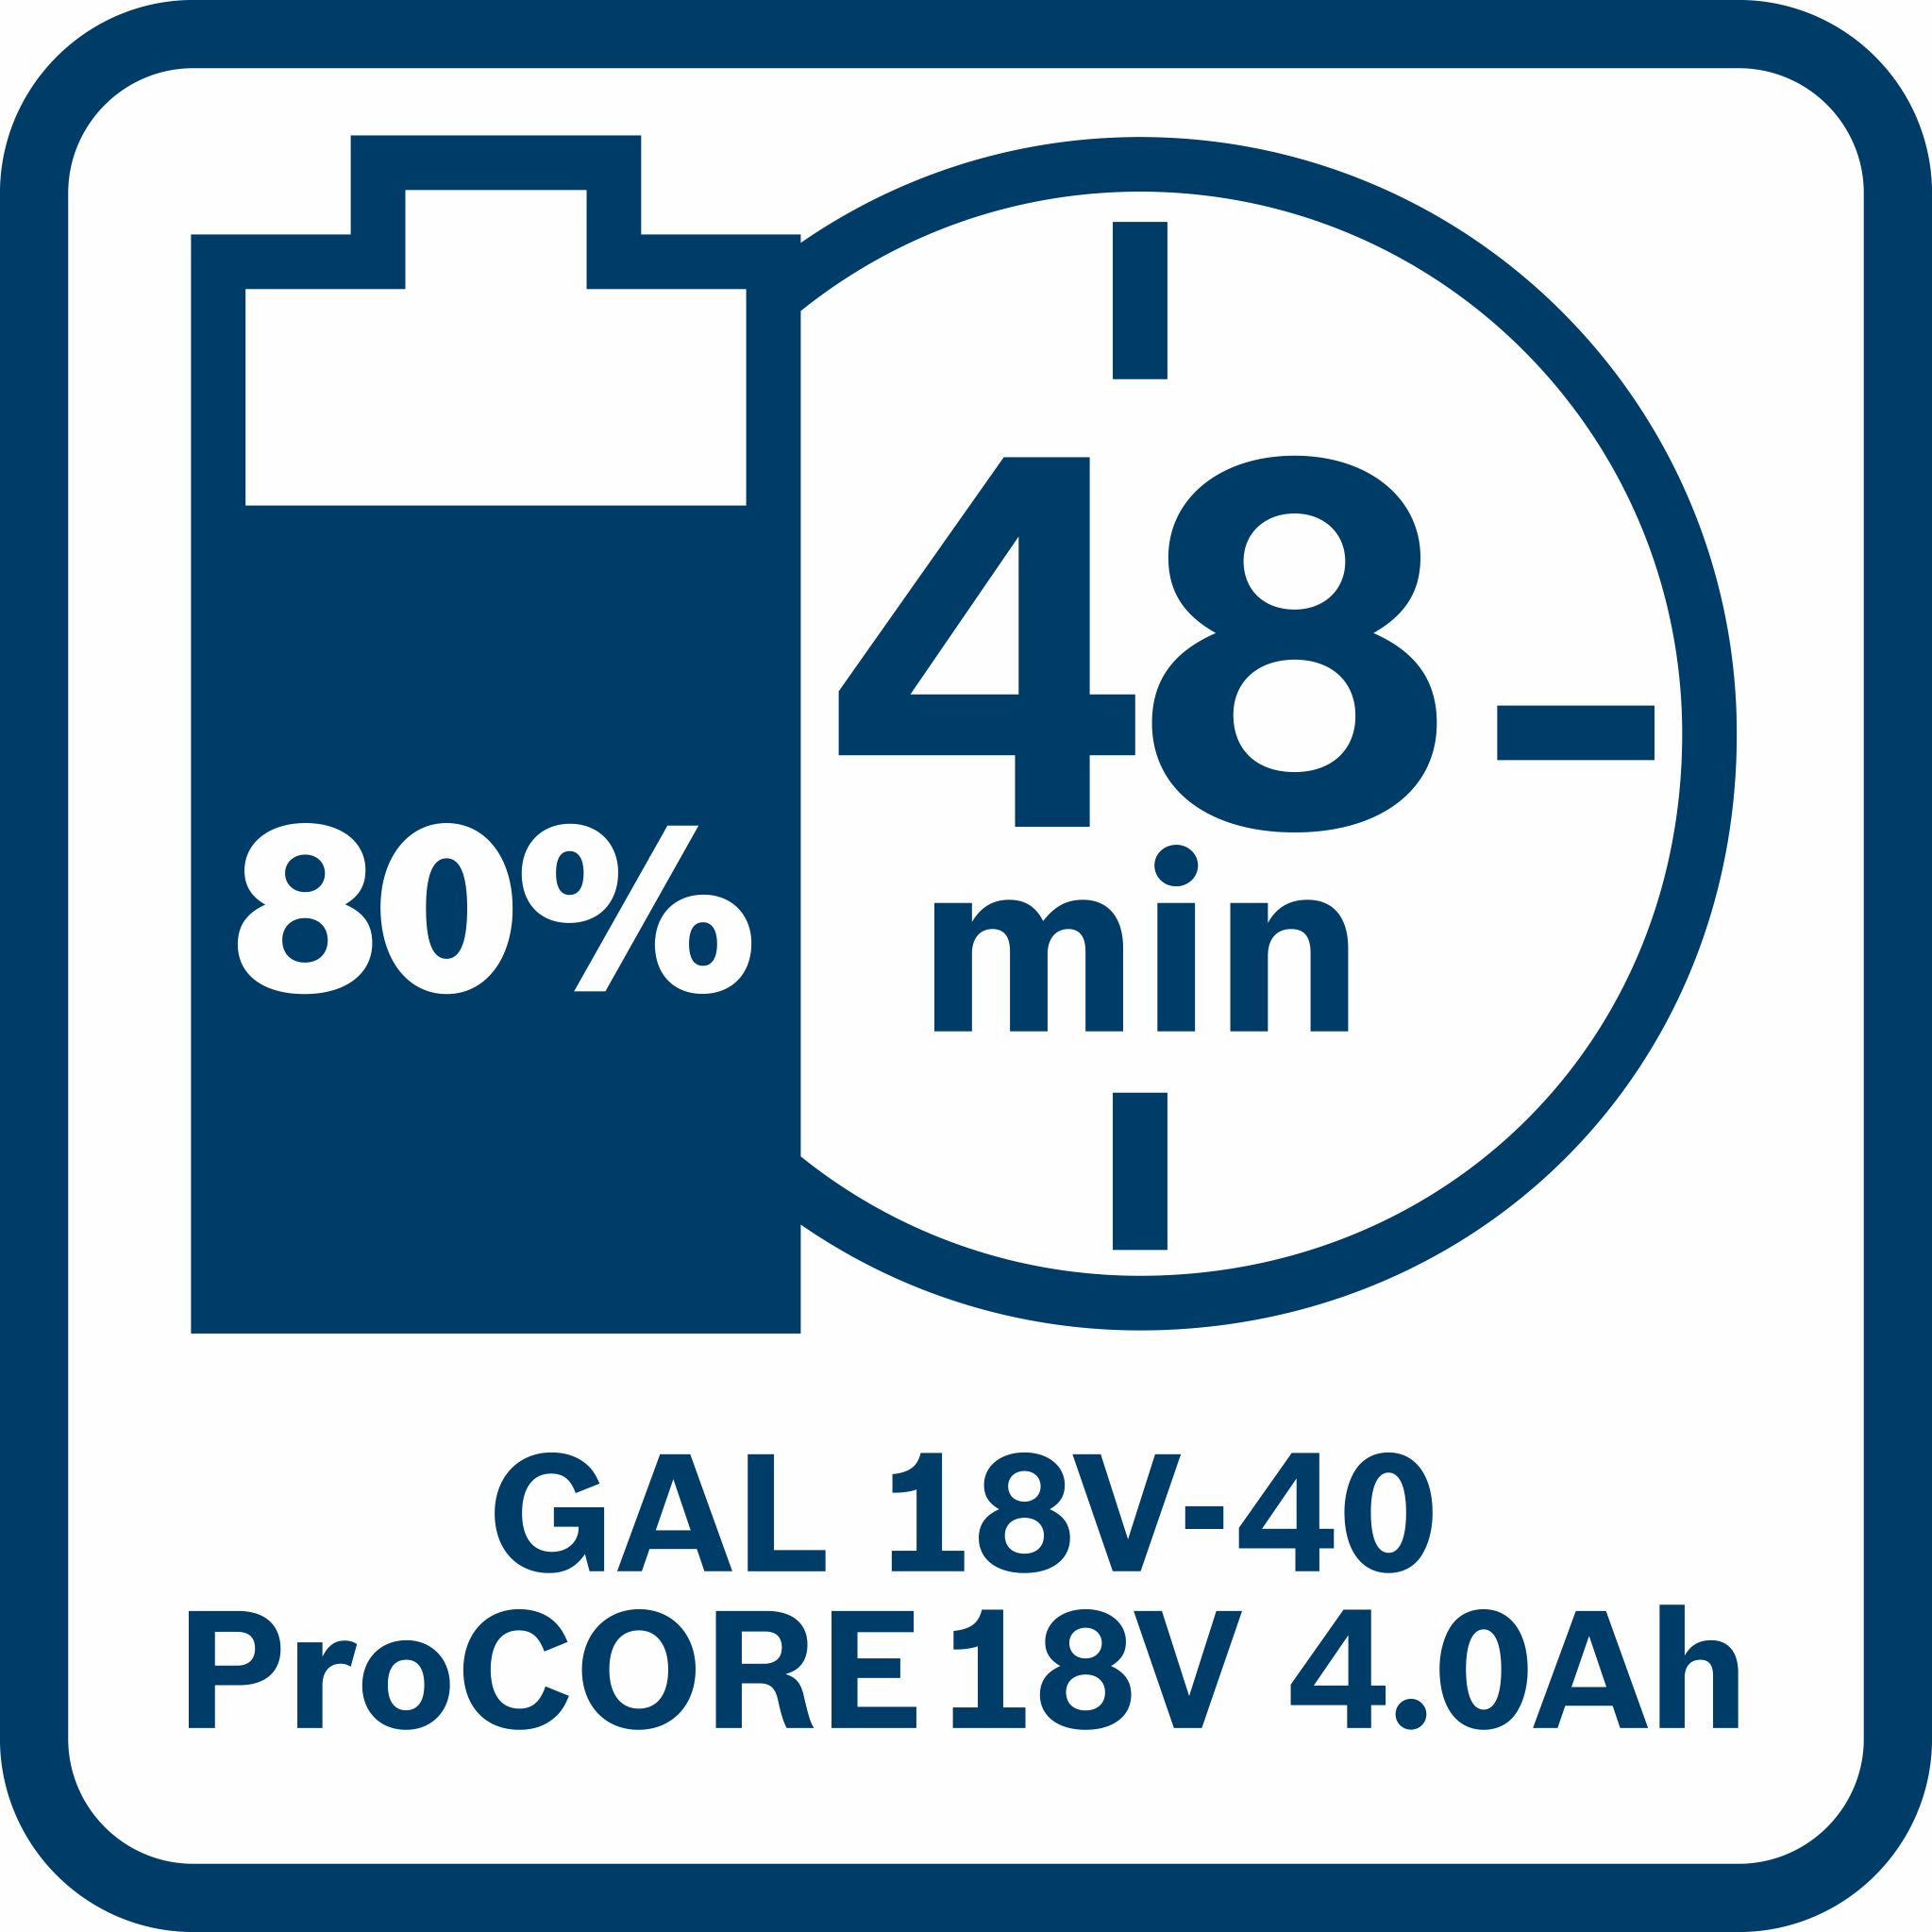 Σετ Φορτιστή GAL 18V-40 και 2 Μπαταριών ProCORE 18V 4.0Ah Bosch - 3